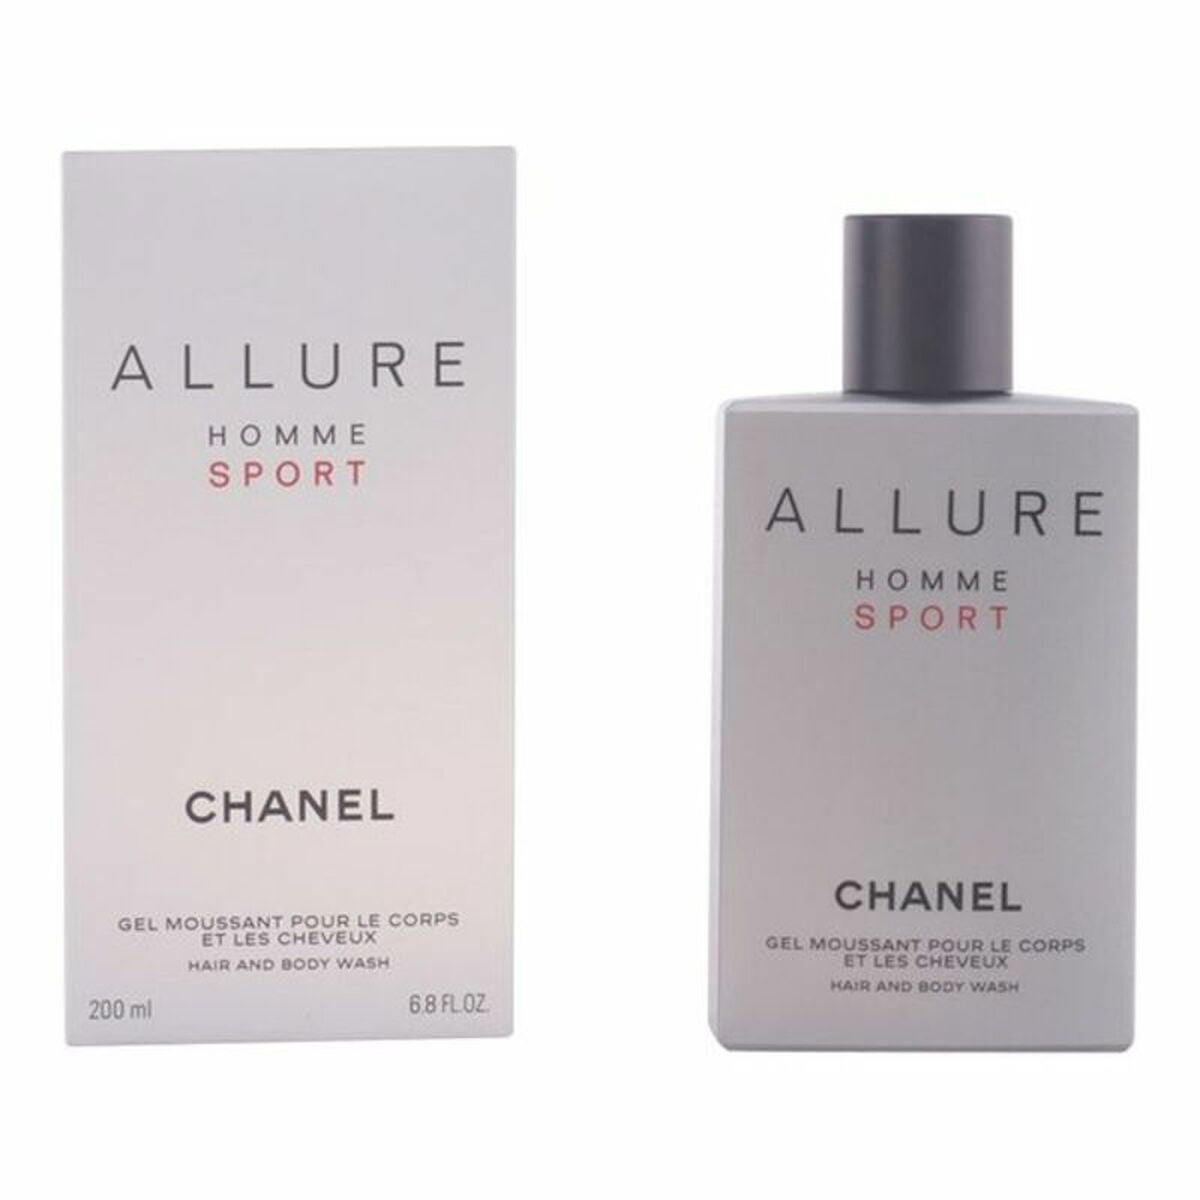 Kaufe Duschgel Chanel Allure Homme Sport 200 ml bei AWK Flagship um € 67.00